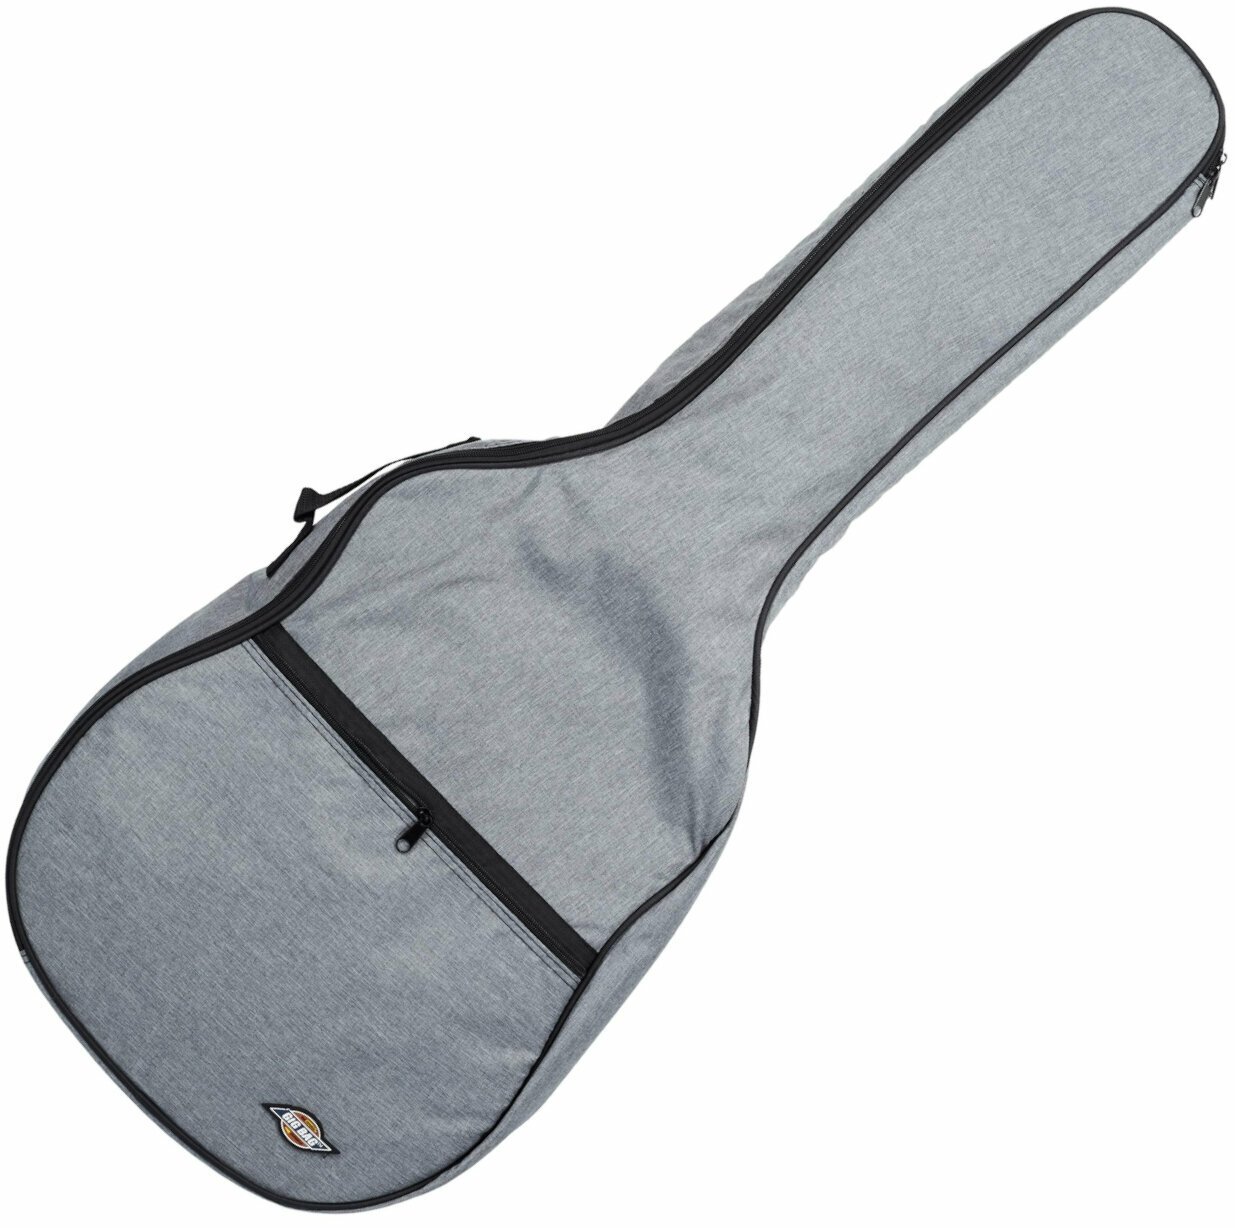 Tasche für Konzertgitarre, Gigbag für Konzertgitarre Tanglewood 4/4 CC BG Tasche für Konzertgitarre, Gigbag für Konzertgitarre Grey